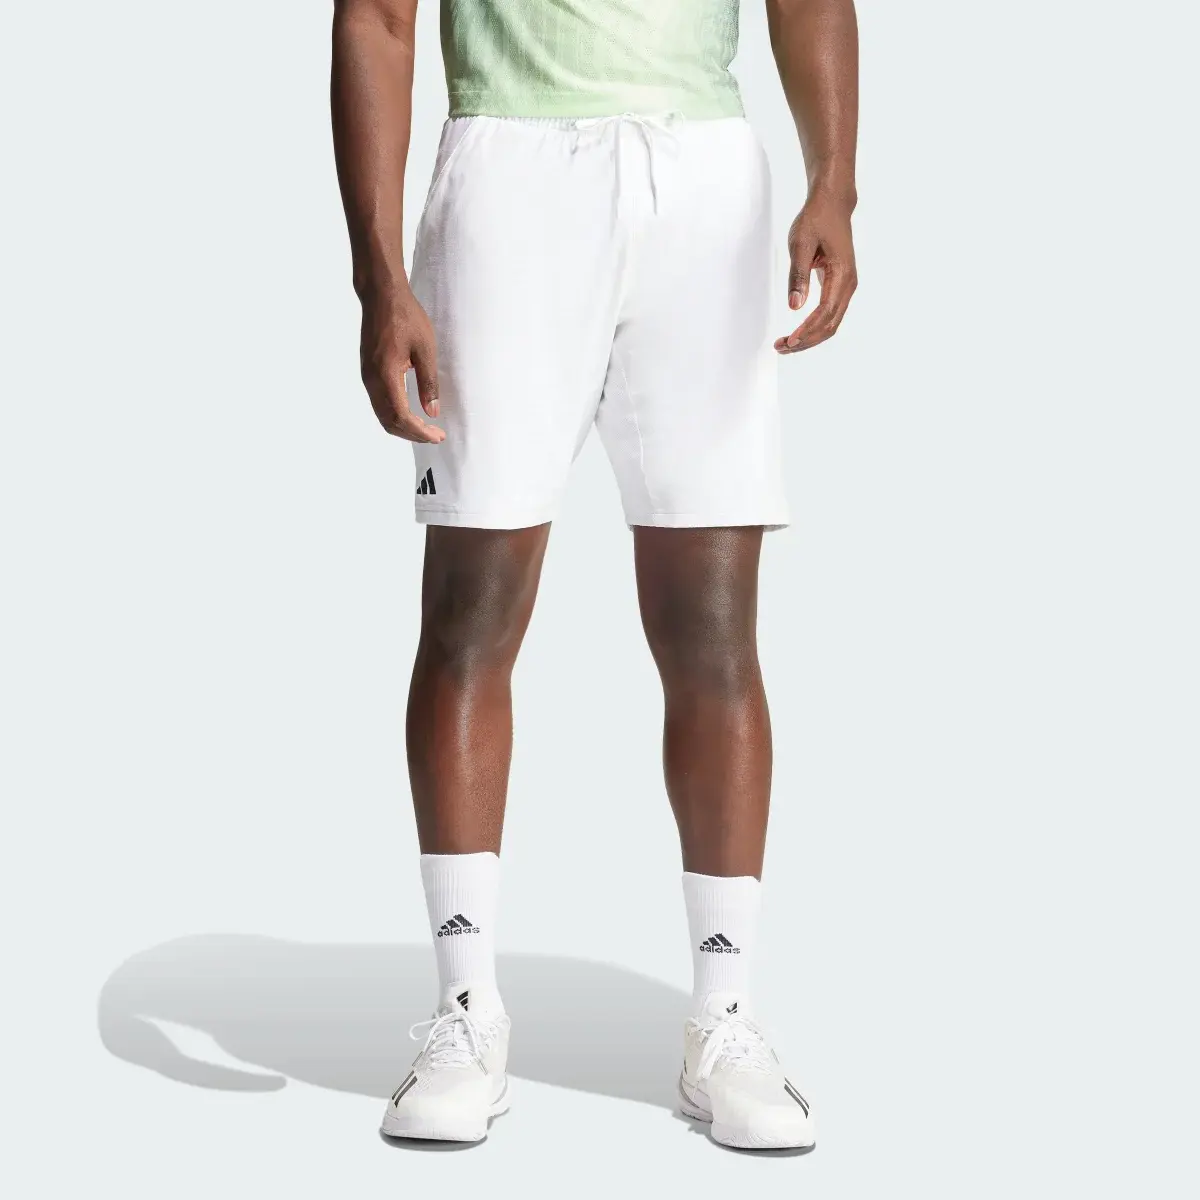 Adidas Tennis Ergo Shorts. 1